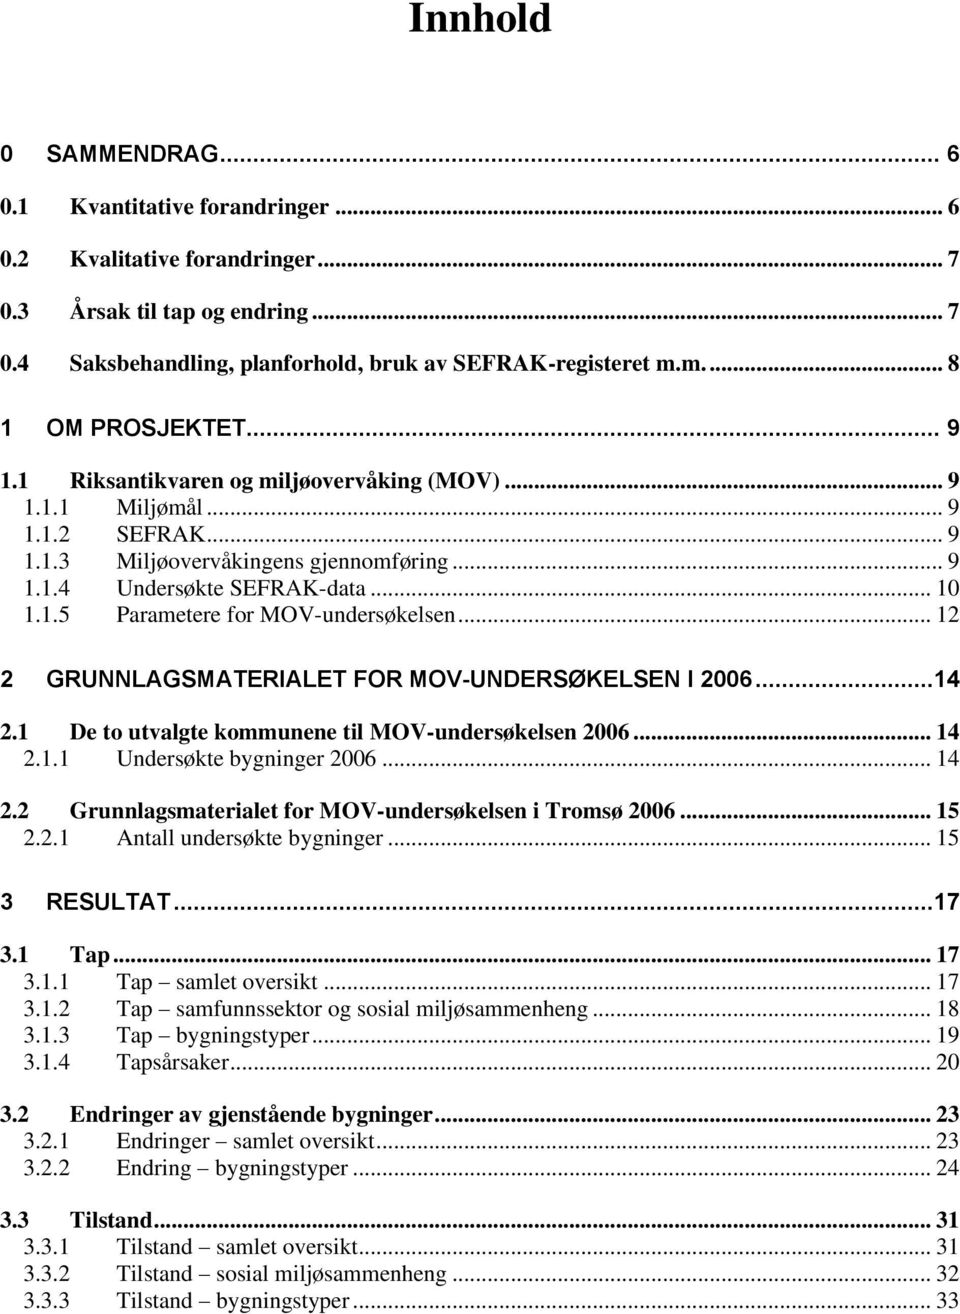 .. 12 2 GRUNNLAGSMATERIALET FOR MOV-UNDERSØKELSEN I 2006...14 2.1 De to utvalgte kommunene til MOV-undersøkelsen 2006... 14 2.1.1 Undersøkte bygninger 2006... 14 2.2 Grunnlagsmaterialet for MOV-undersøkelsen i Tromsø 2006.